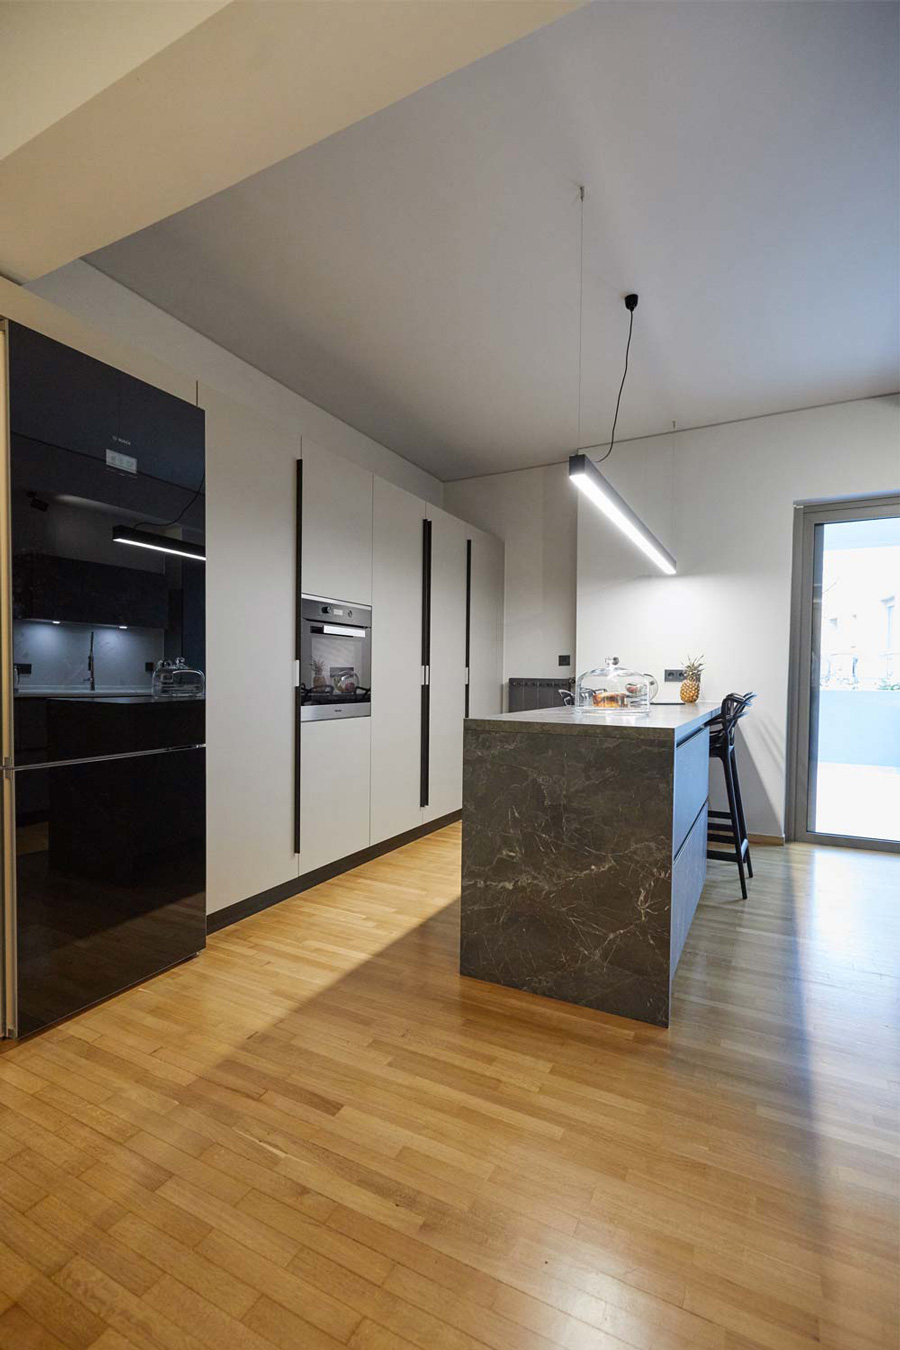 Open plan, grey kitchen modern design